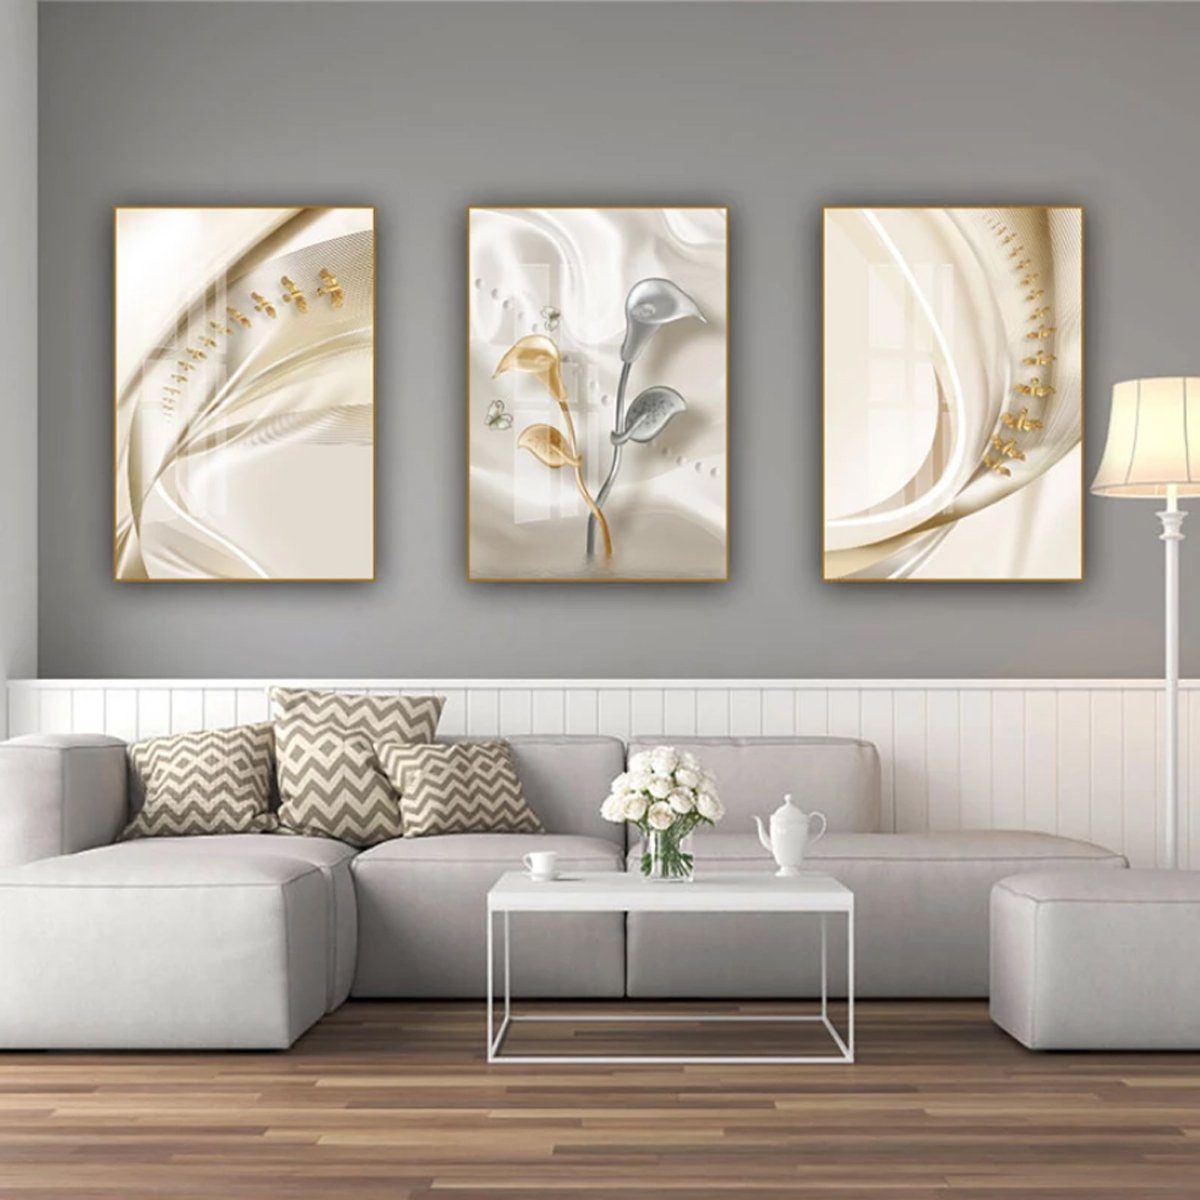 TPFLiving Kunstdruck (OHNE RAHMEN) Poster - Leinwand - Wandbild, Abstrakte Strukturen - Wanddeko Wohnzimmer - (13 verschiedene Größen zur Auswahl - Auch im günstigen 3-er Set), Farben: Beige, Weiß, Gold - Größe: 30x40cm